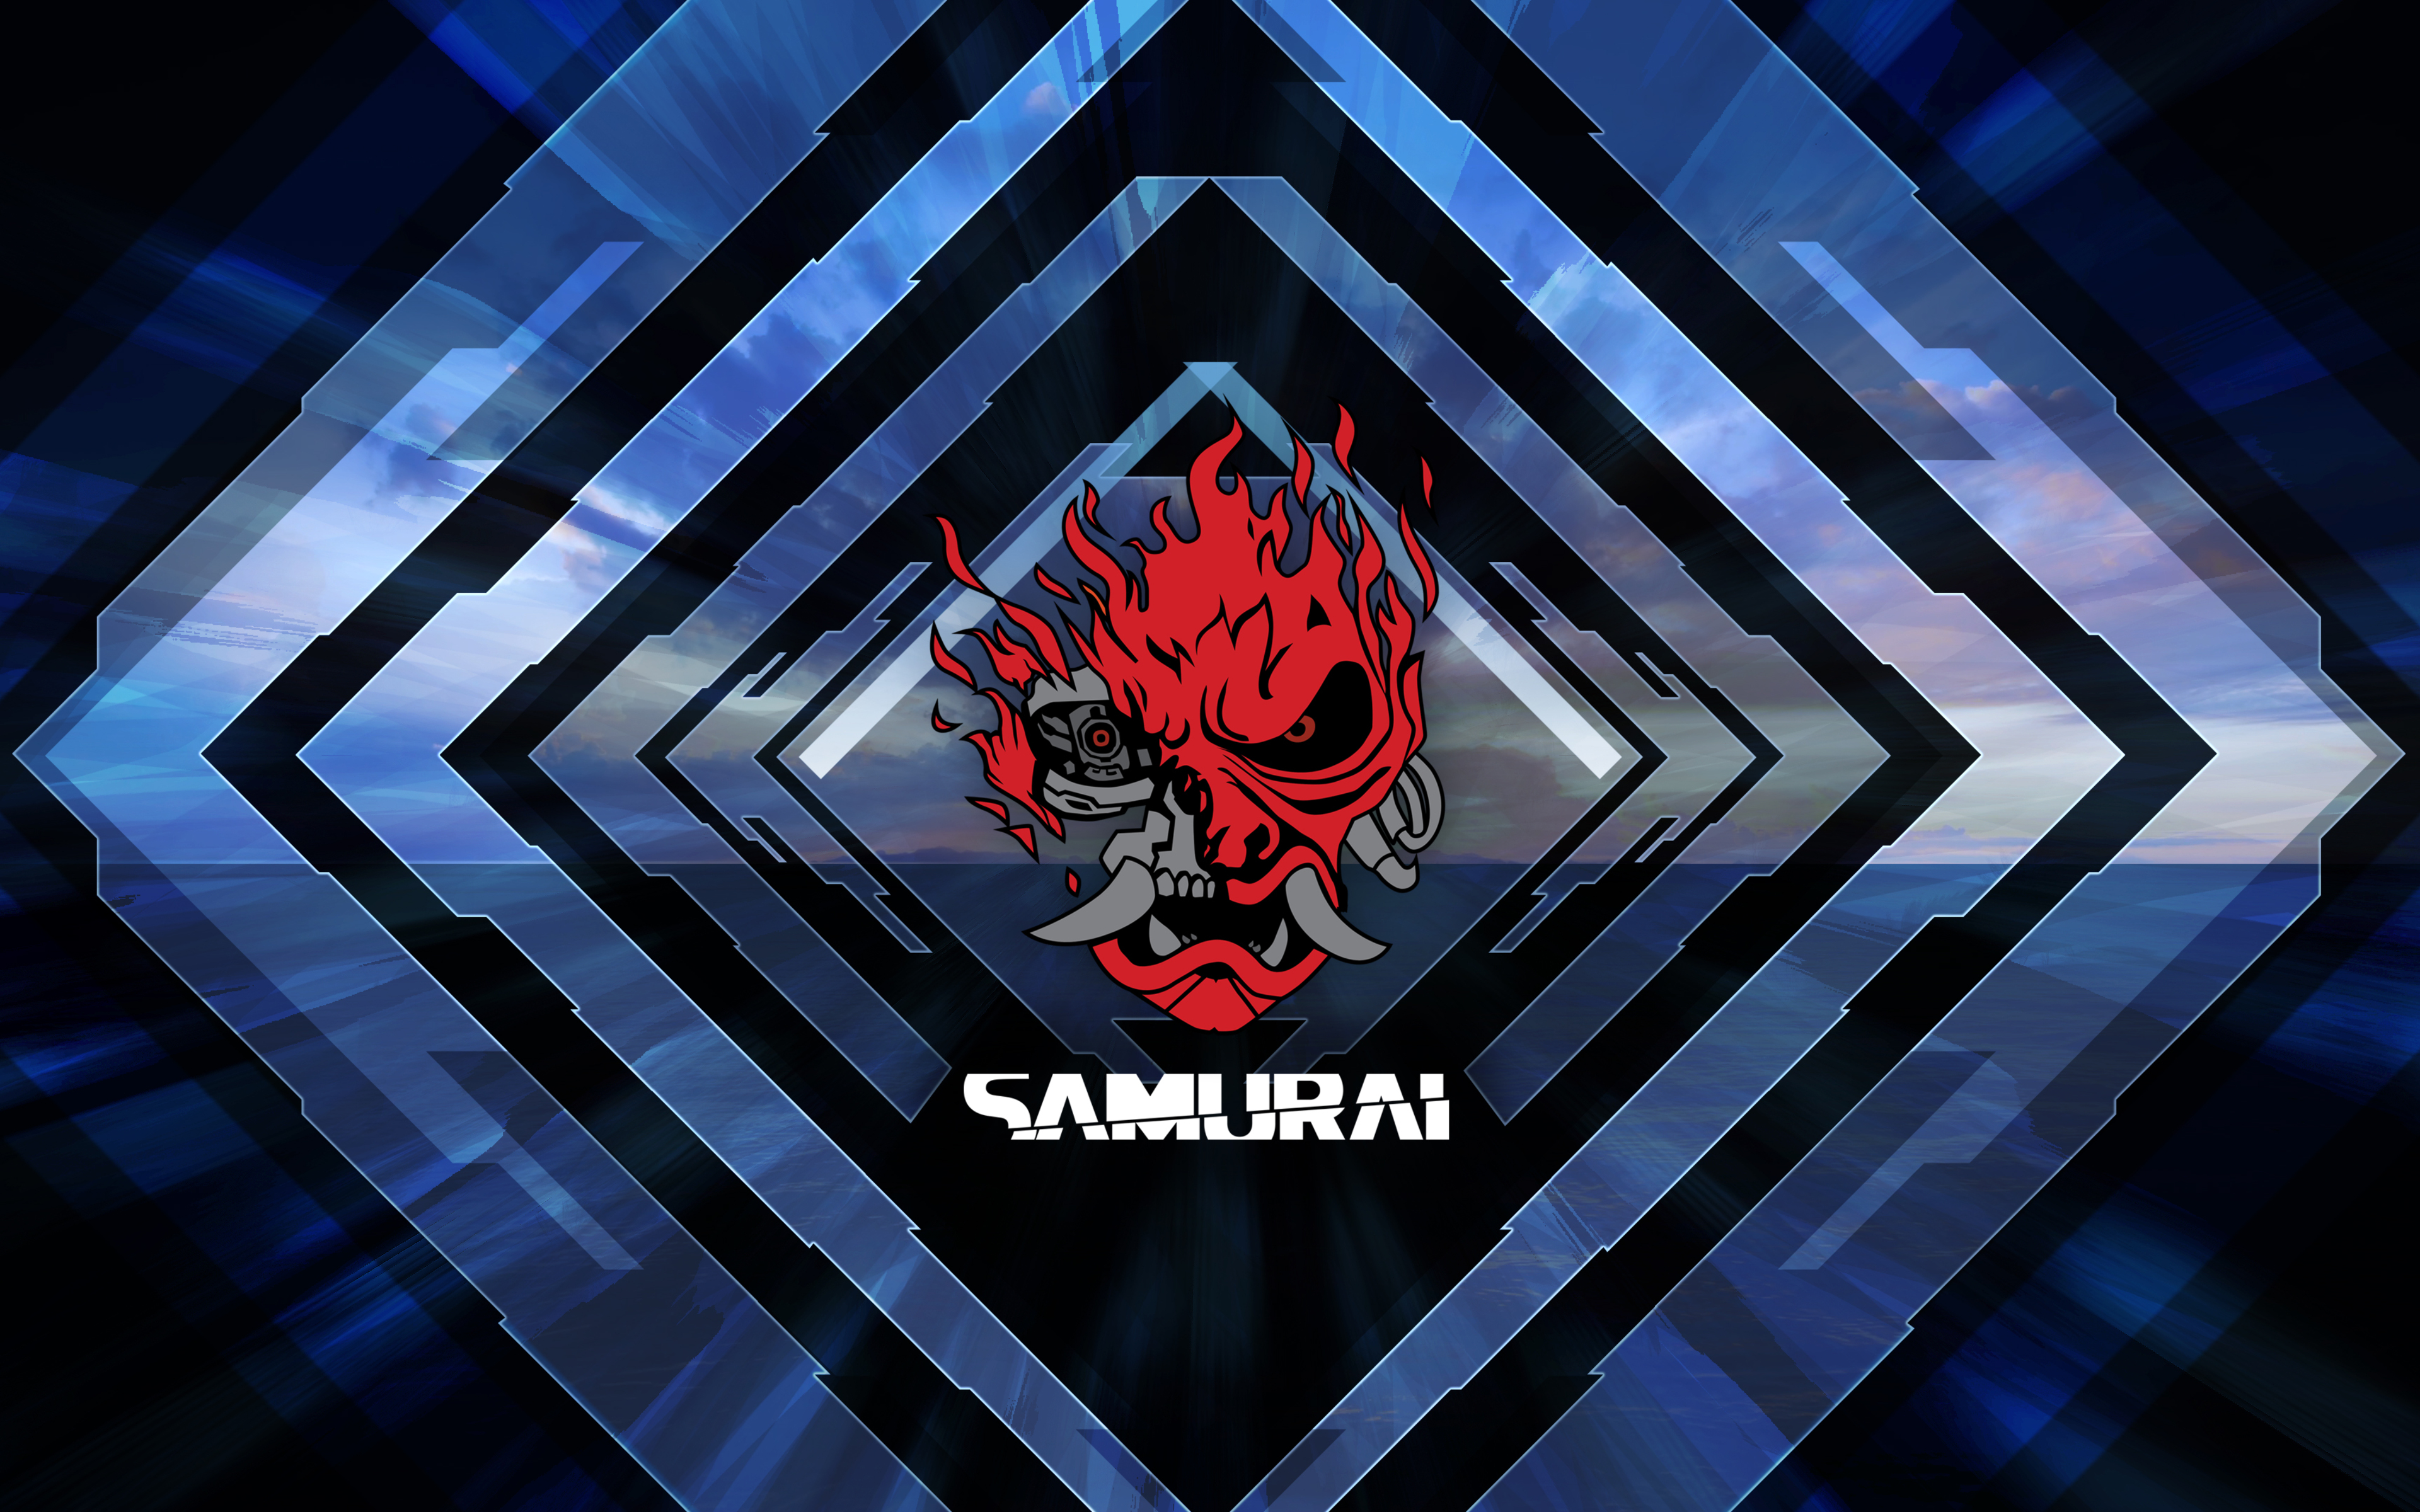 Samurai группа. Самурай киберпанк 2077. Cyberpunk 2077 Samurai logo. Группа Самурай киберпанк 2077.